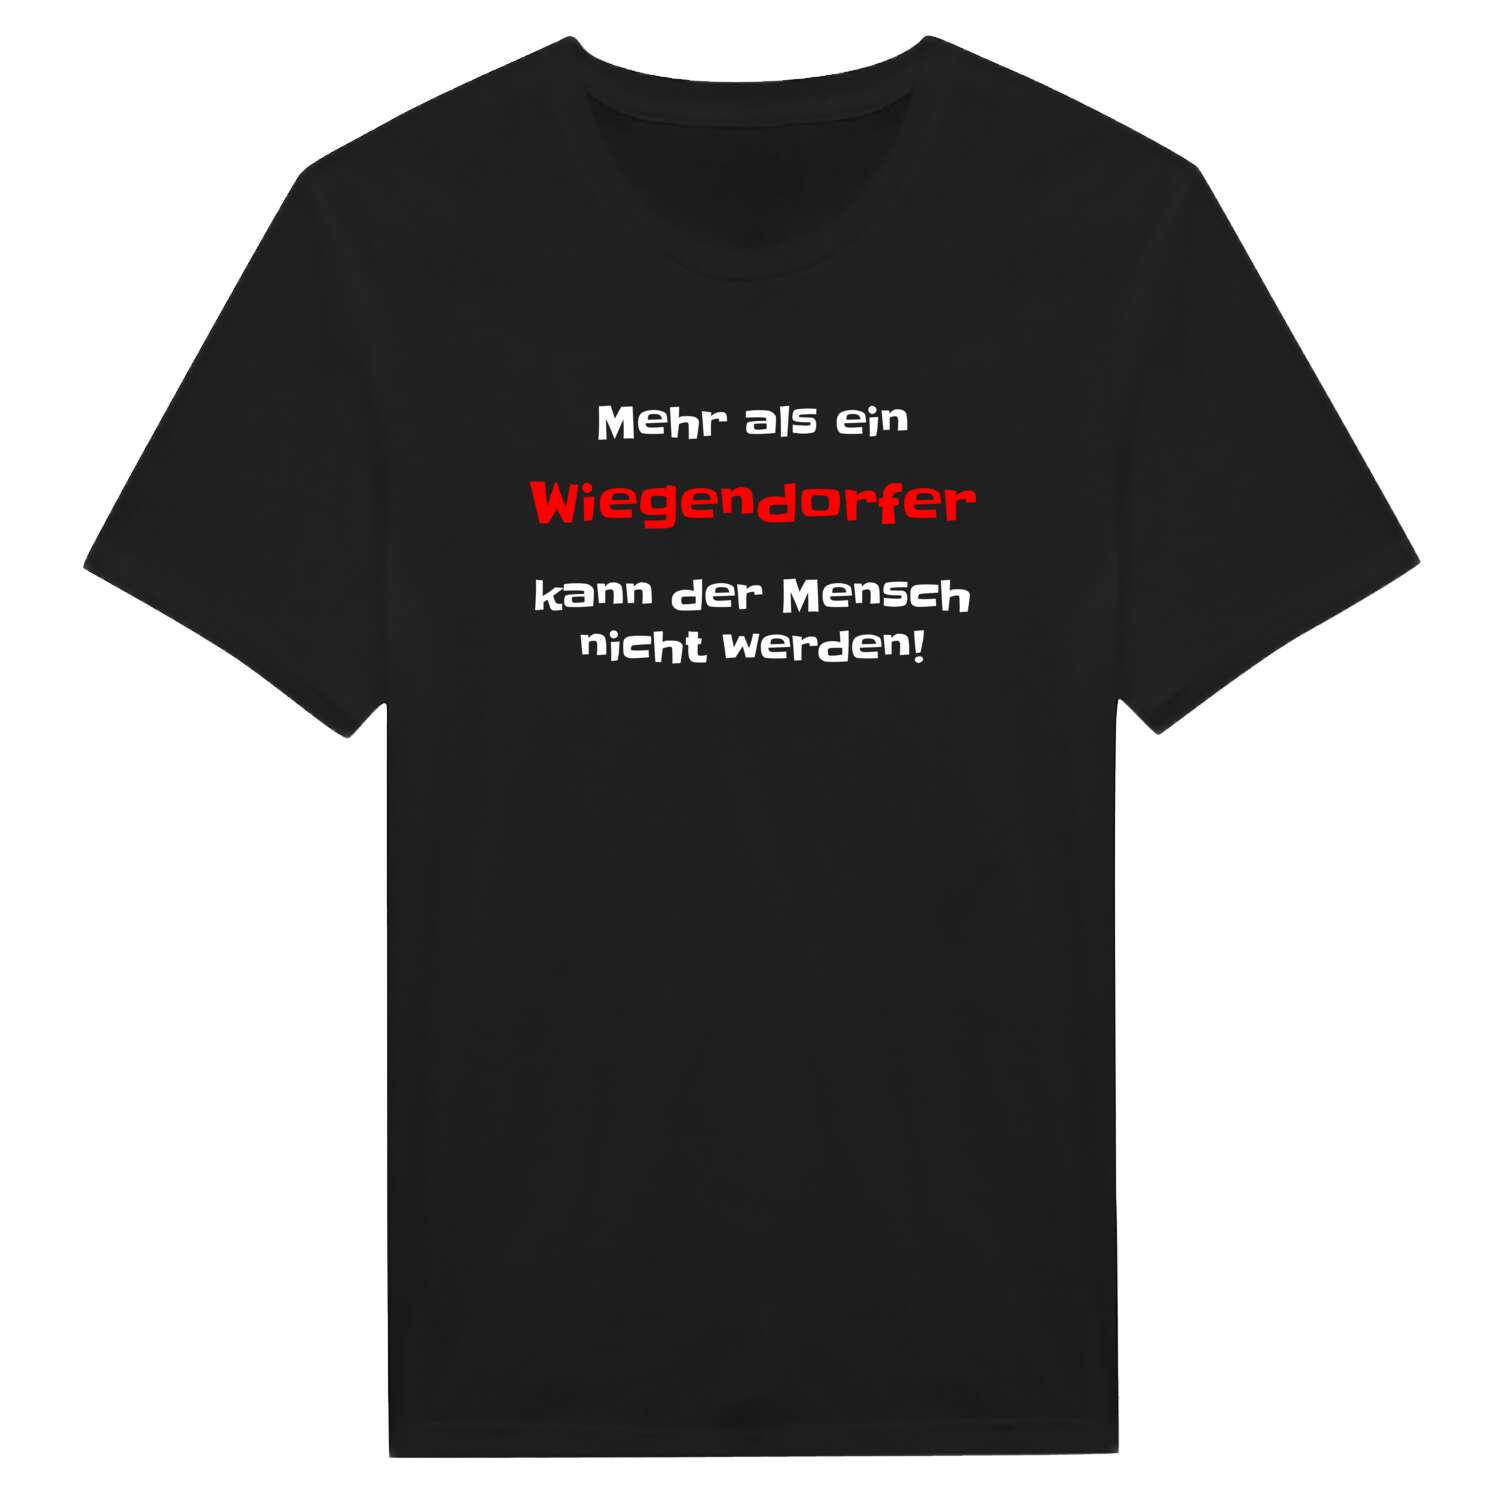 Wiegendorf T-Shirt »Mehr als ein«